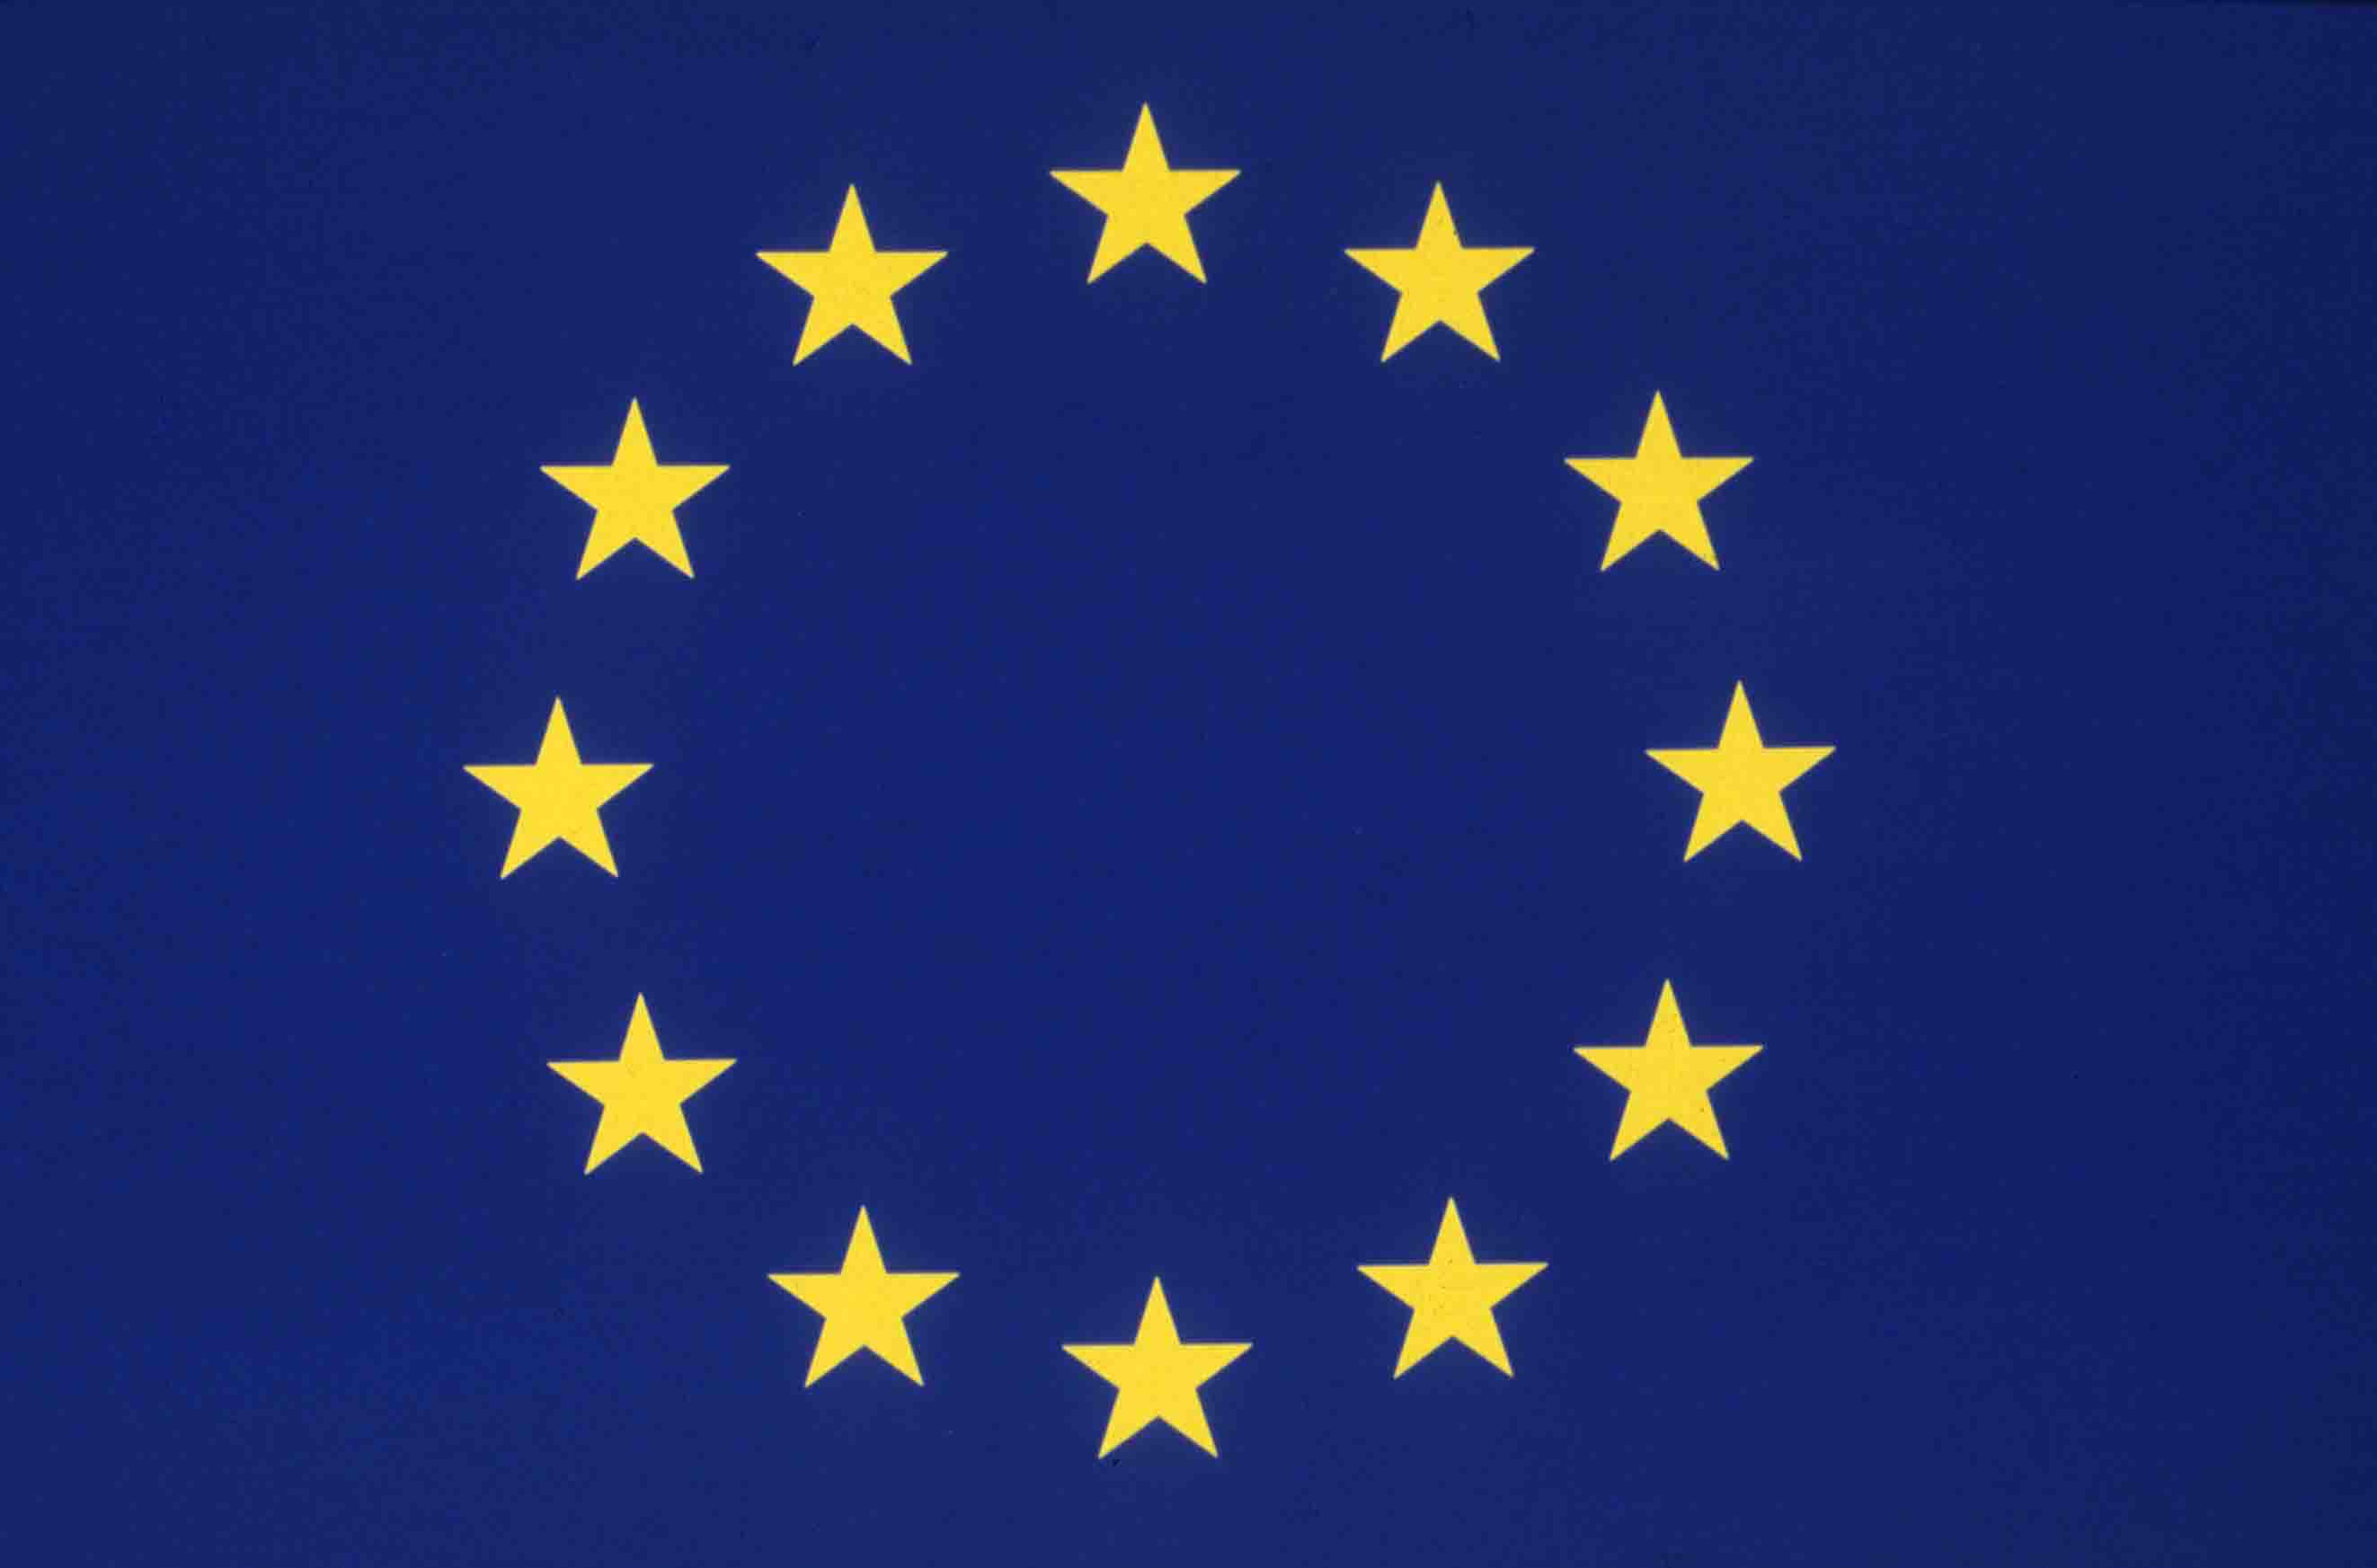 Скачать обои Флаги Европейского Союза на телефон бесплатно